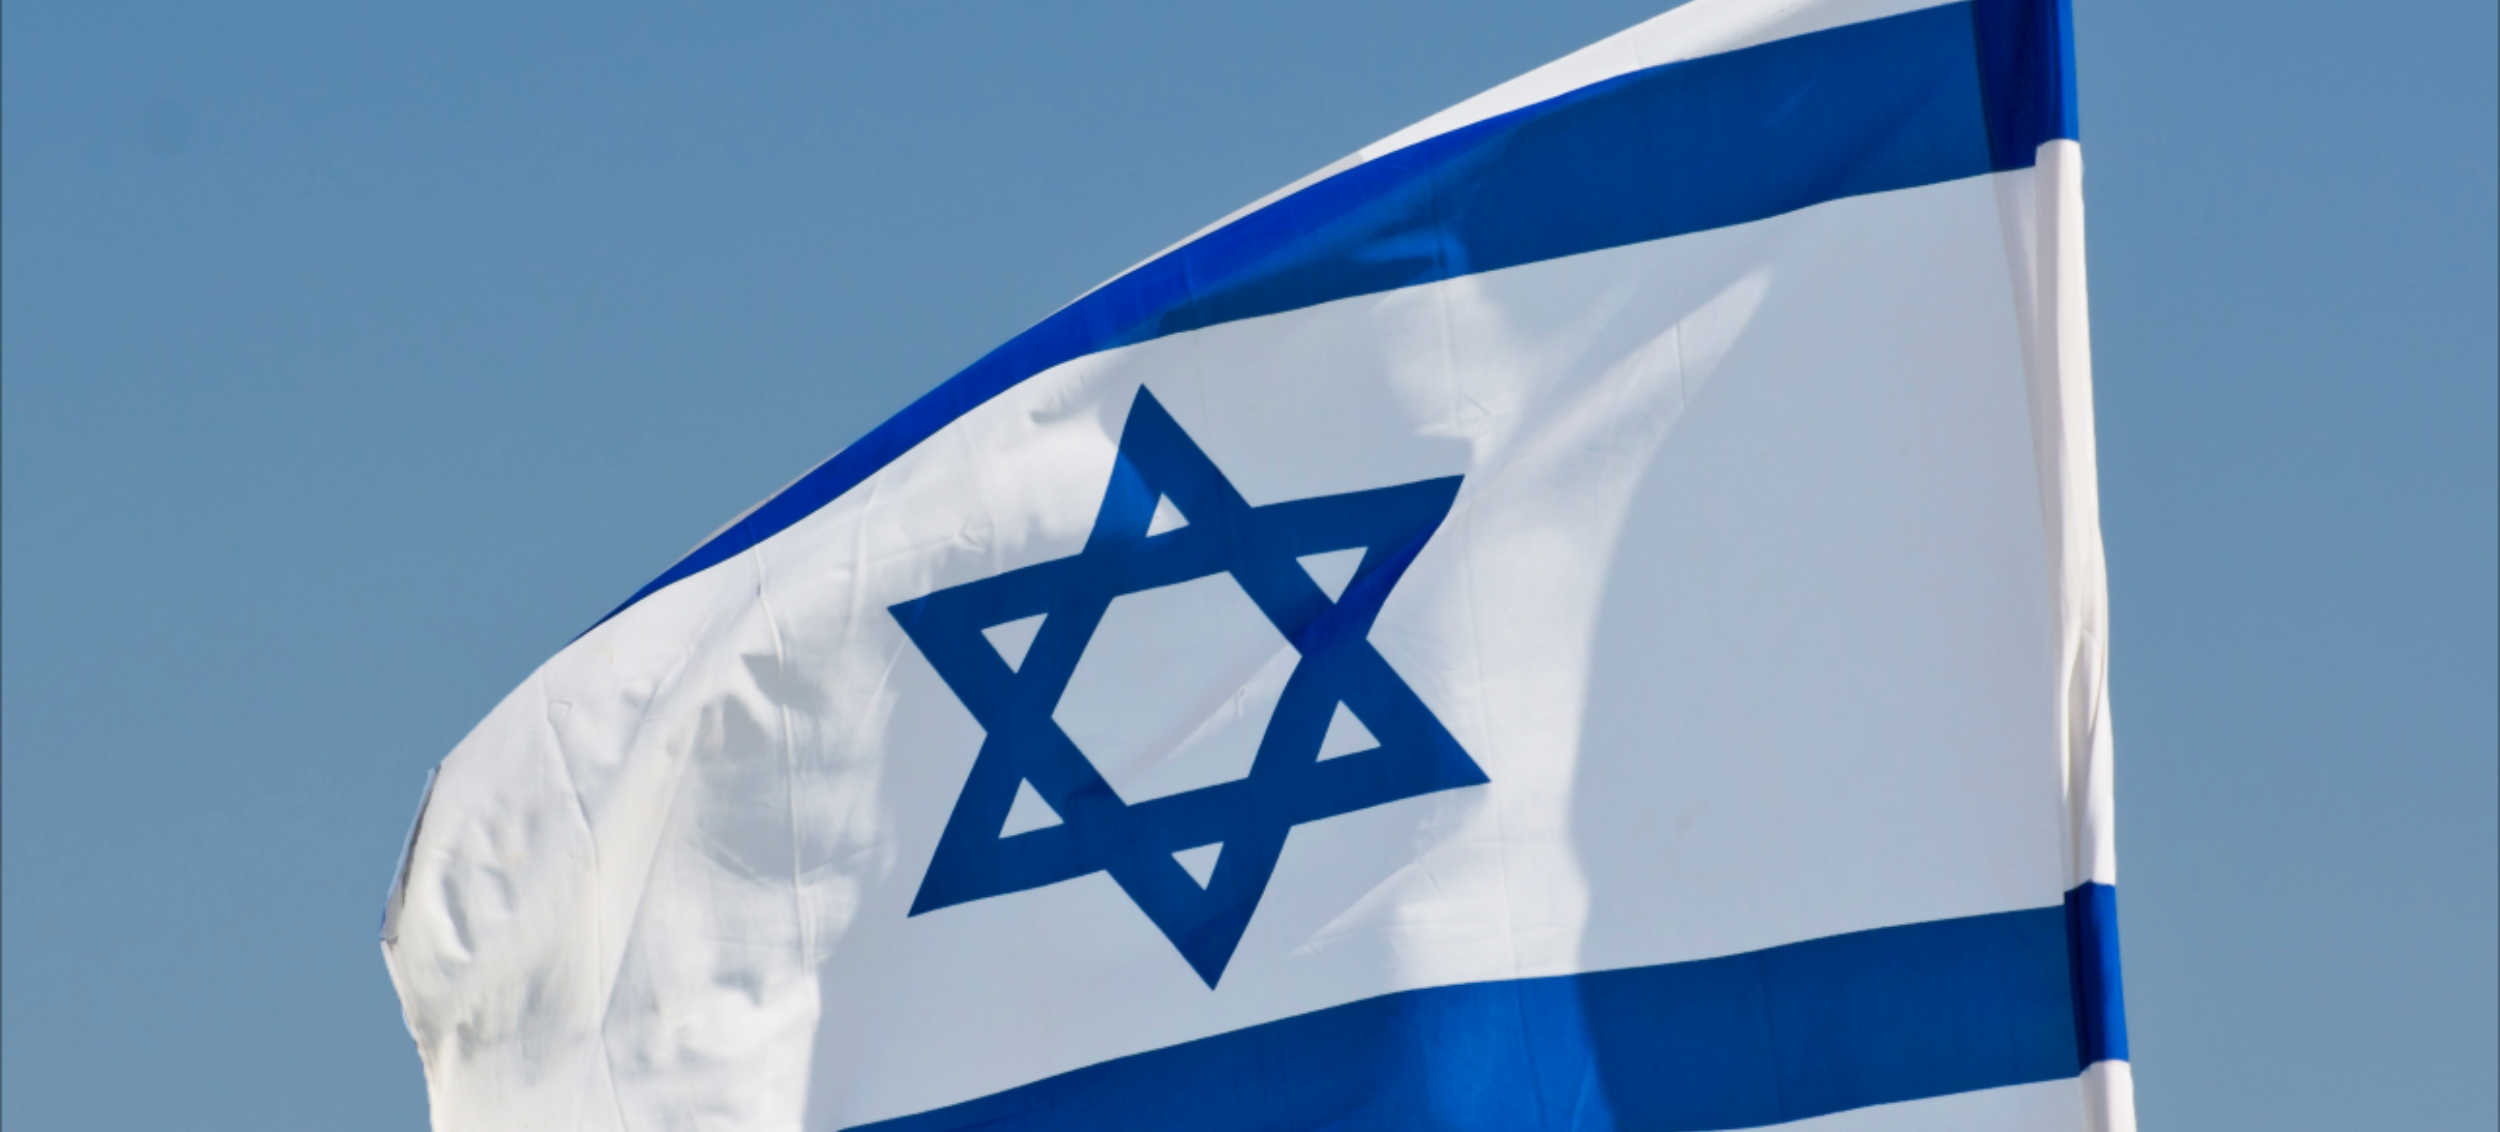 Israël drapeau